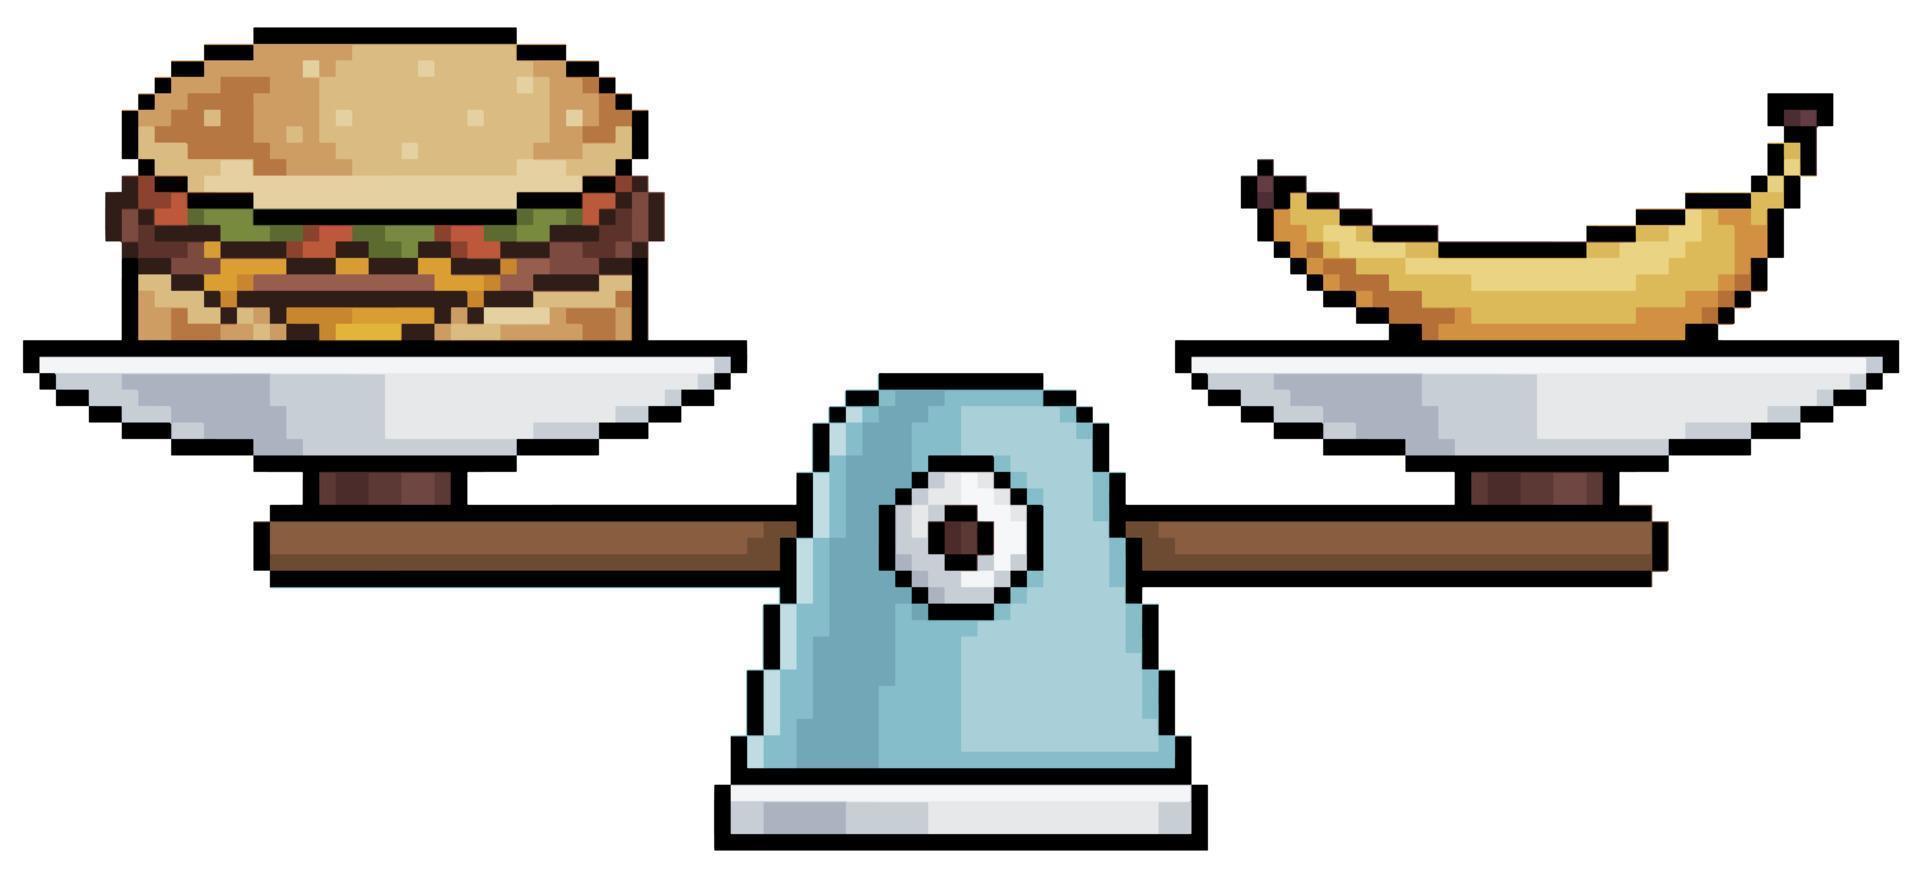 escala de comida de pixel art. comida saudável vs ícone de vetor de comida ruim para jogo de 8 bits em fundo branco